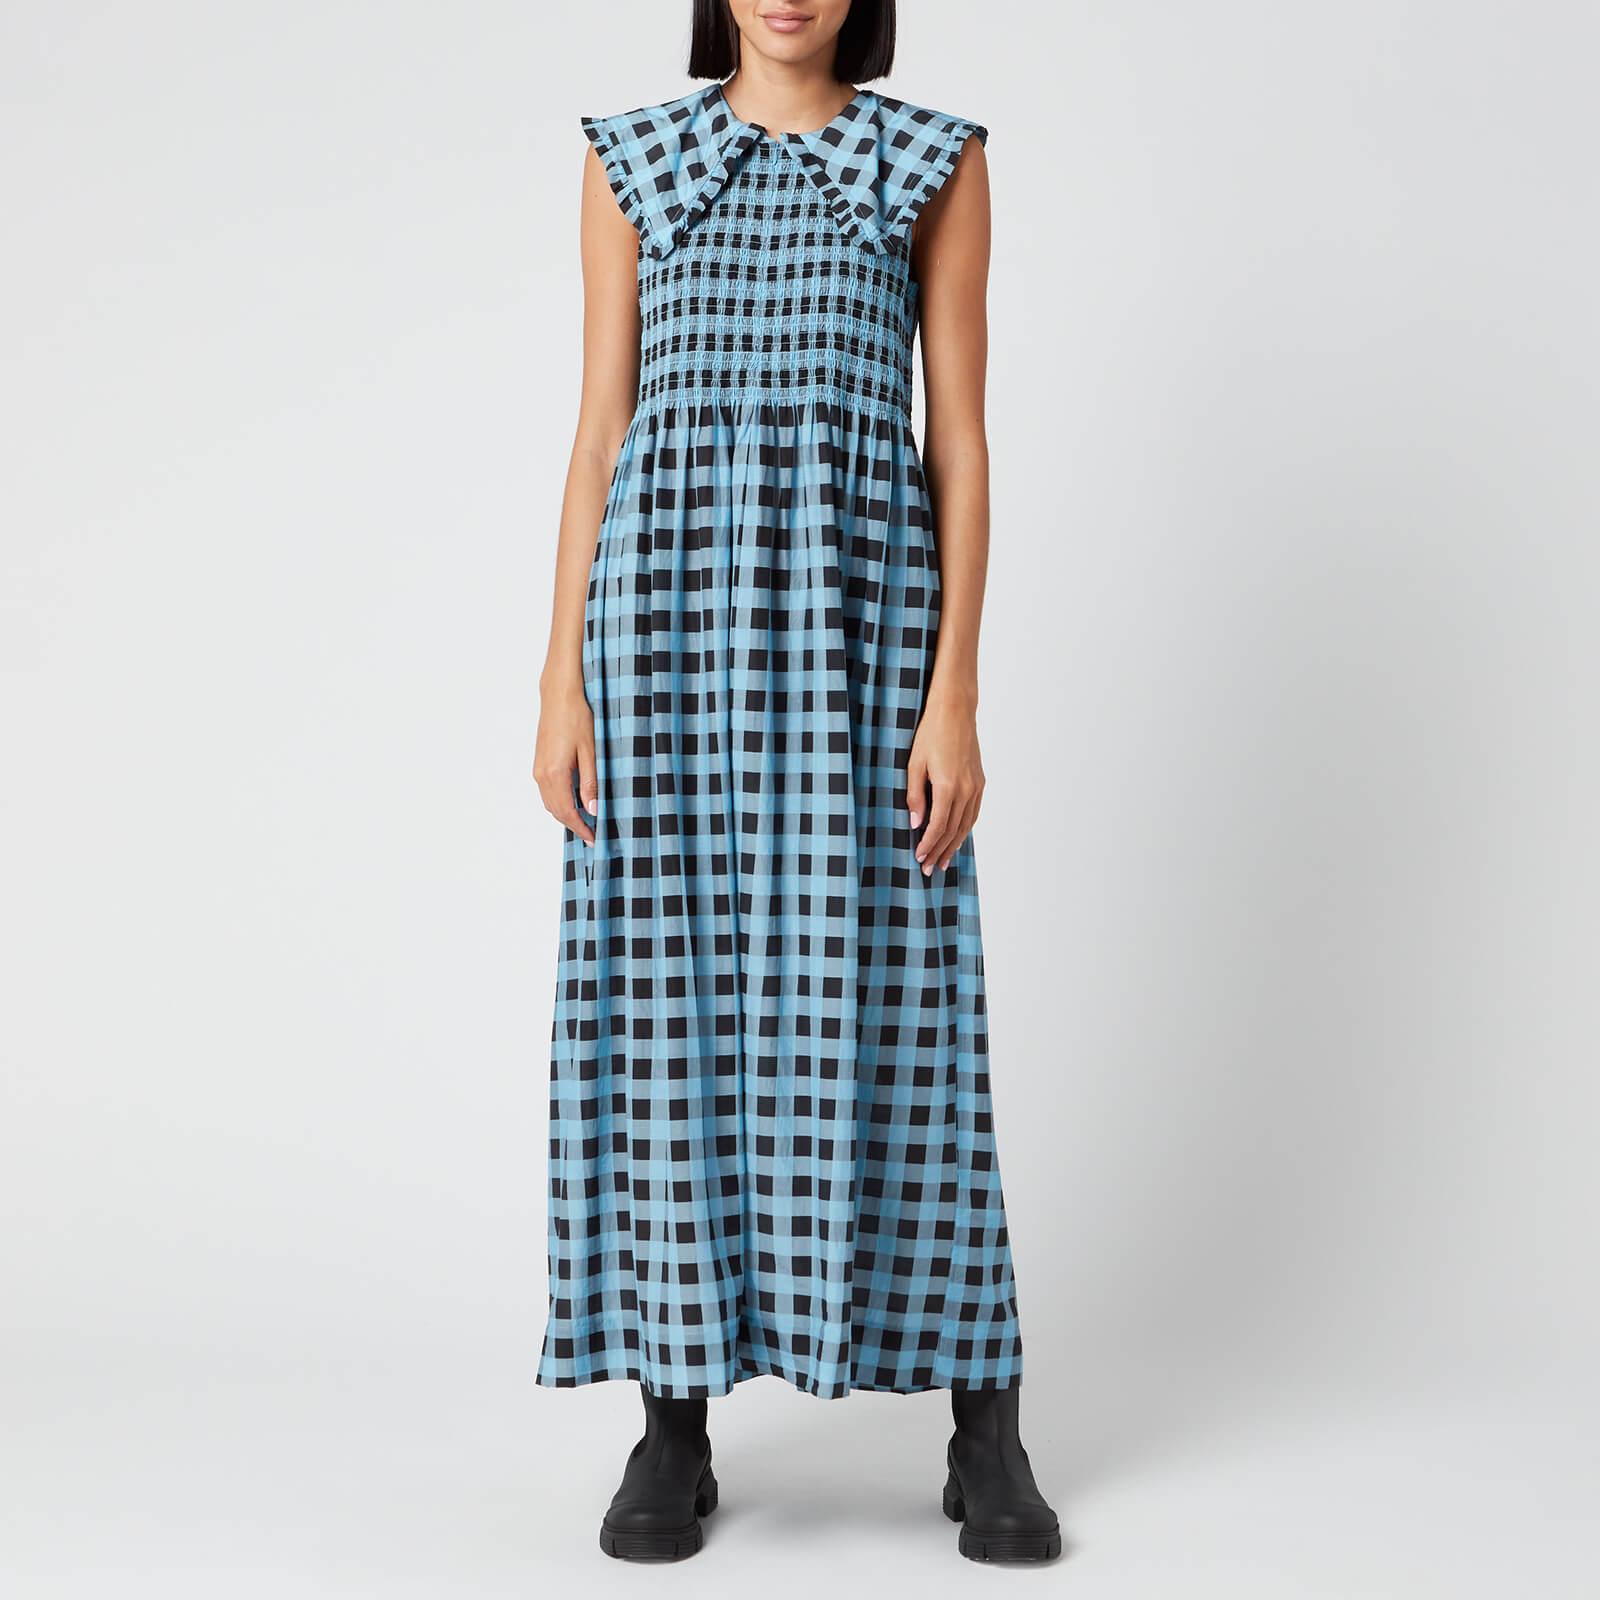 blue checkered dress